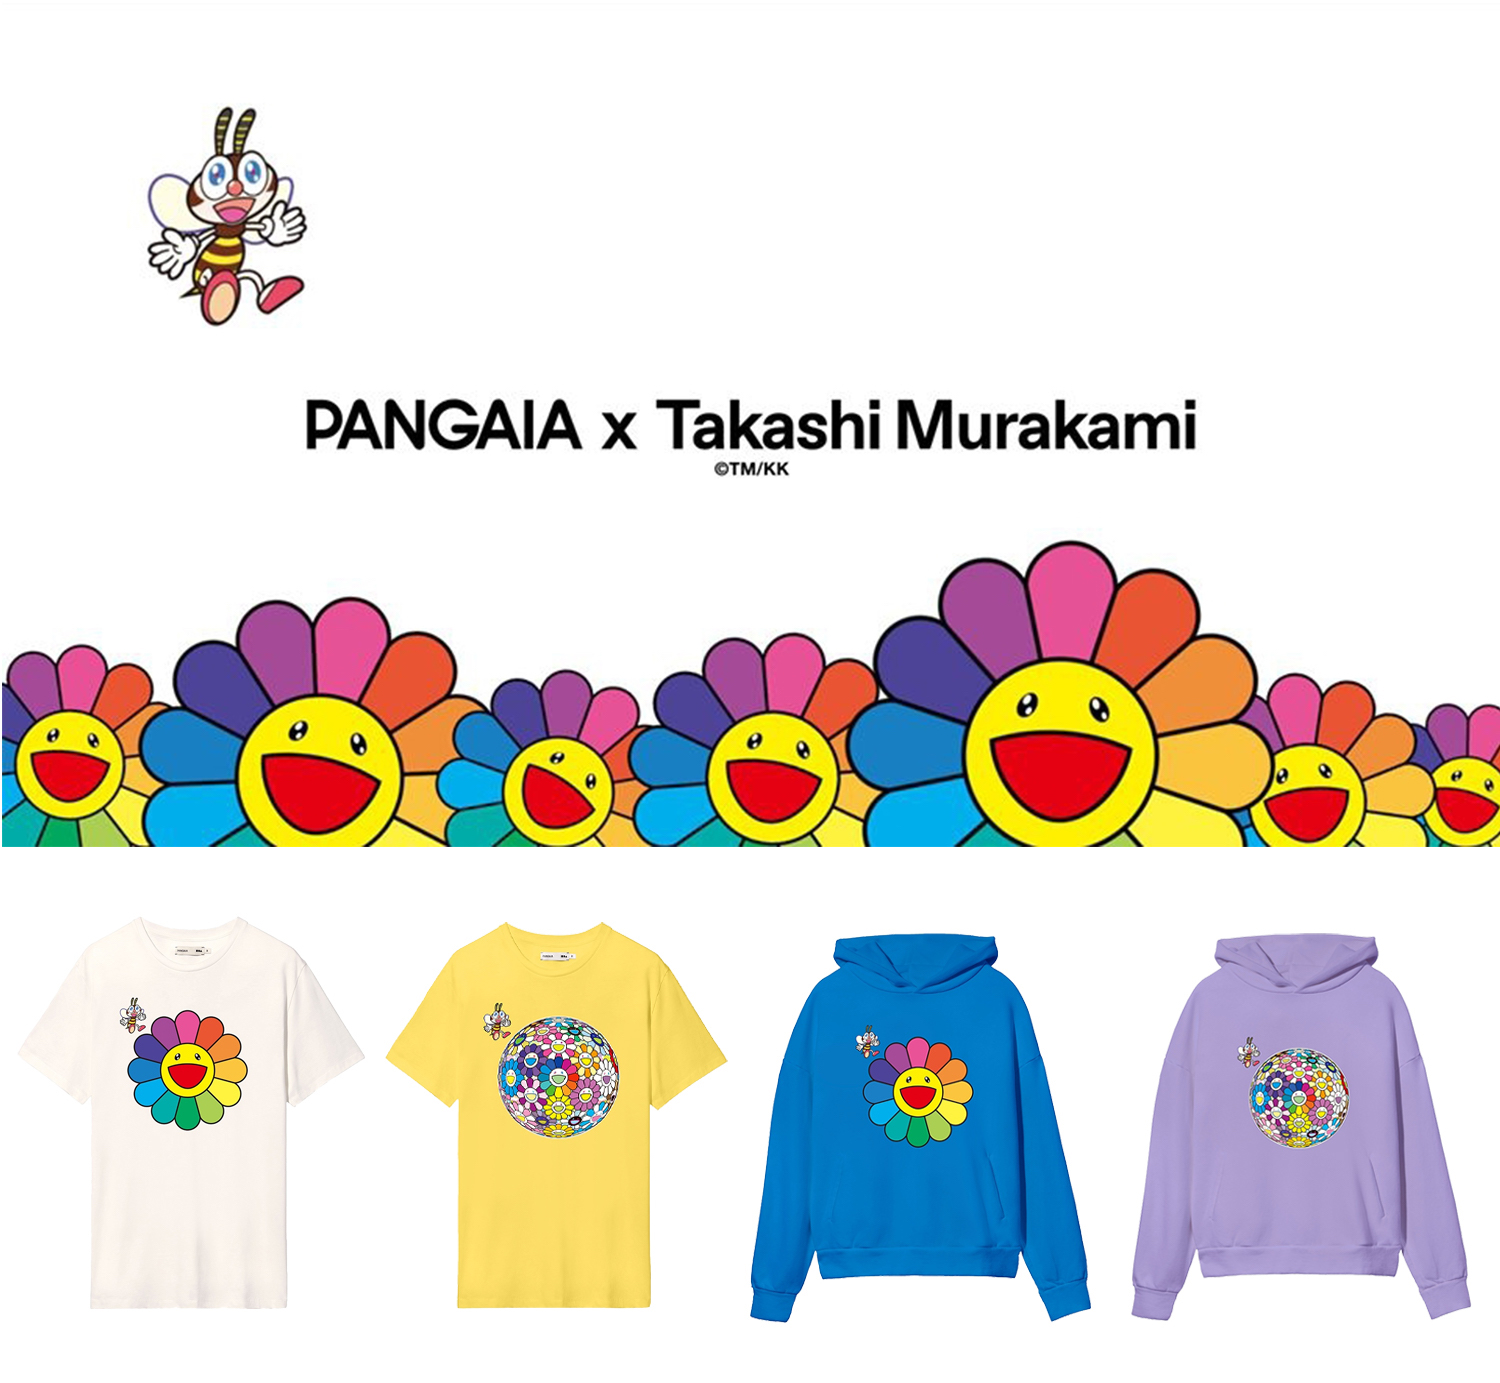 8月4日(火)10時より、Tonari no Zingaro WEBショップにて「PANGAIA 